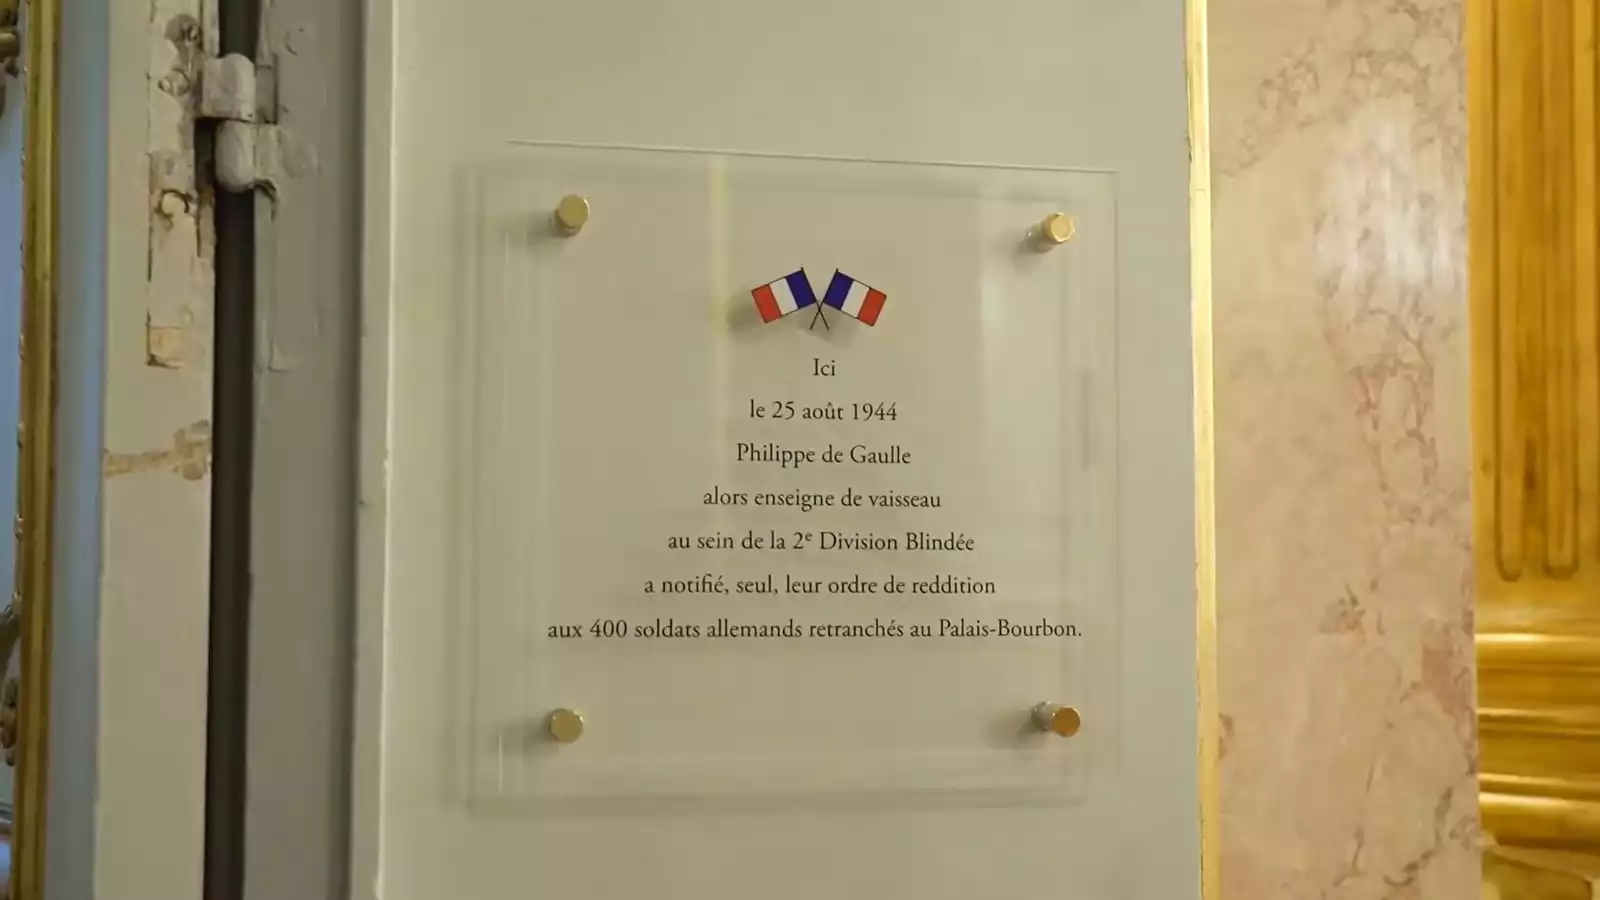 Plaque commémorant la reddition de 400 allemands au Palais-Bourbon (Assemblée nationale) à l'enseigne de vaisseau Philippe de Gaulle